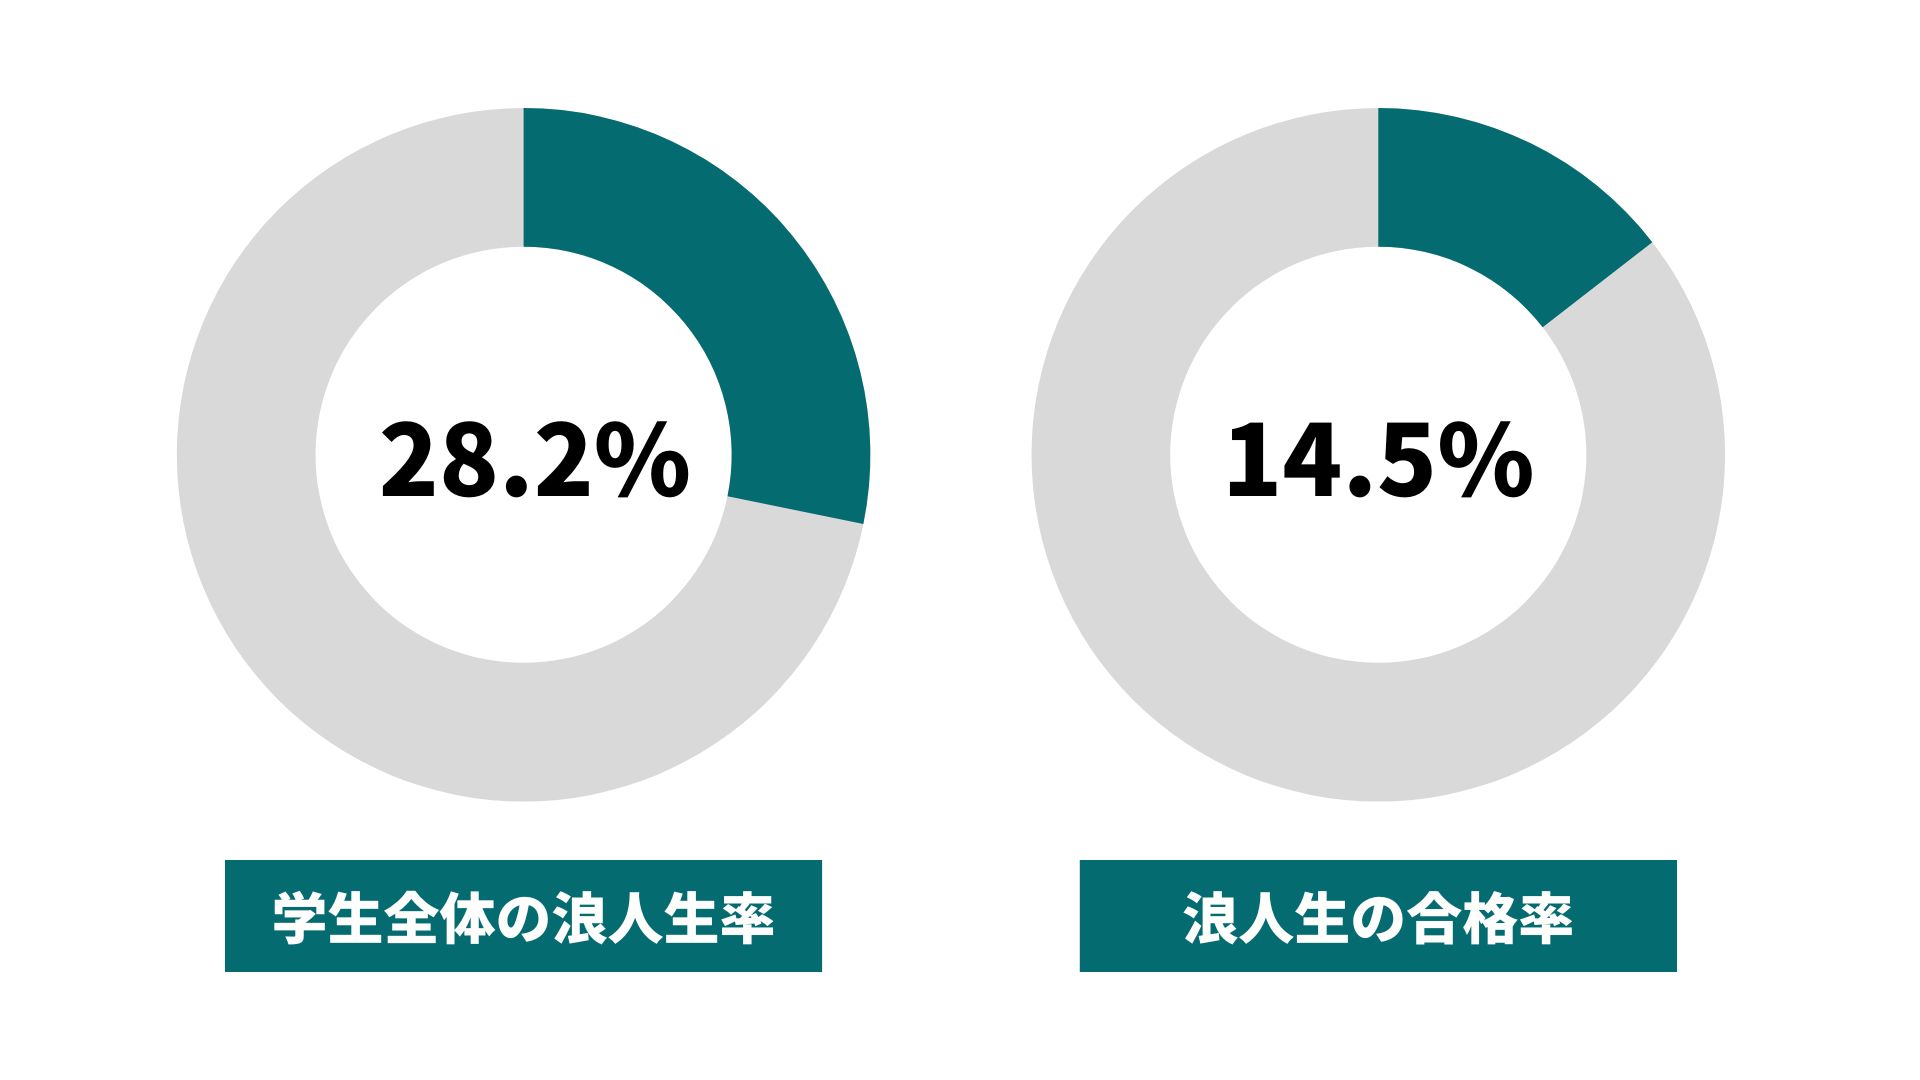 富山大学の浪人生の割合